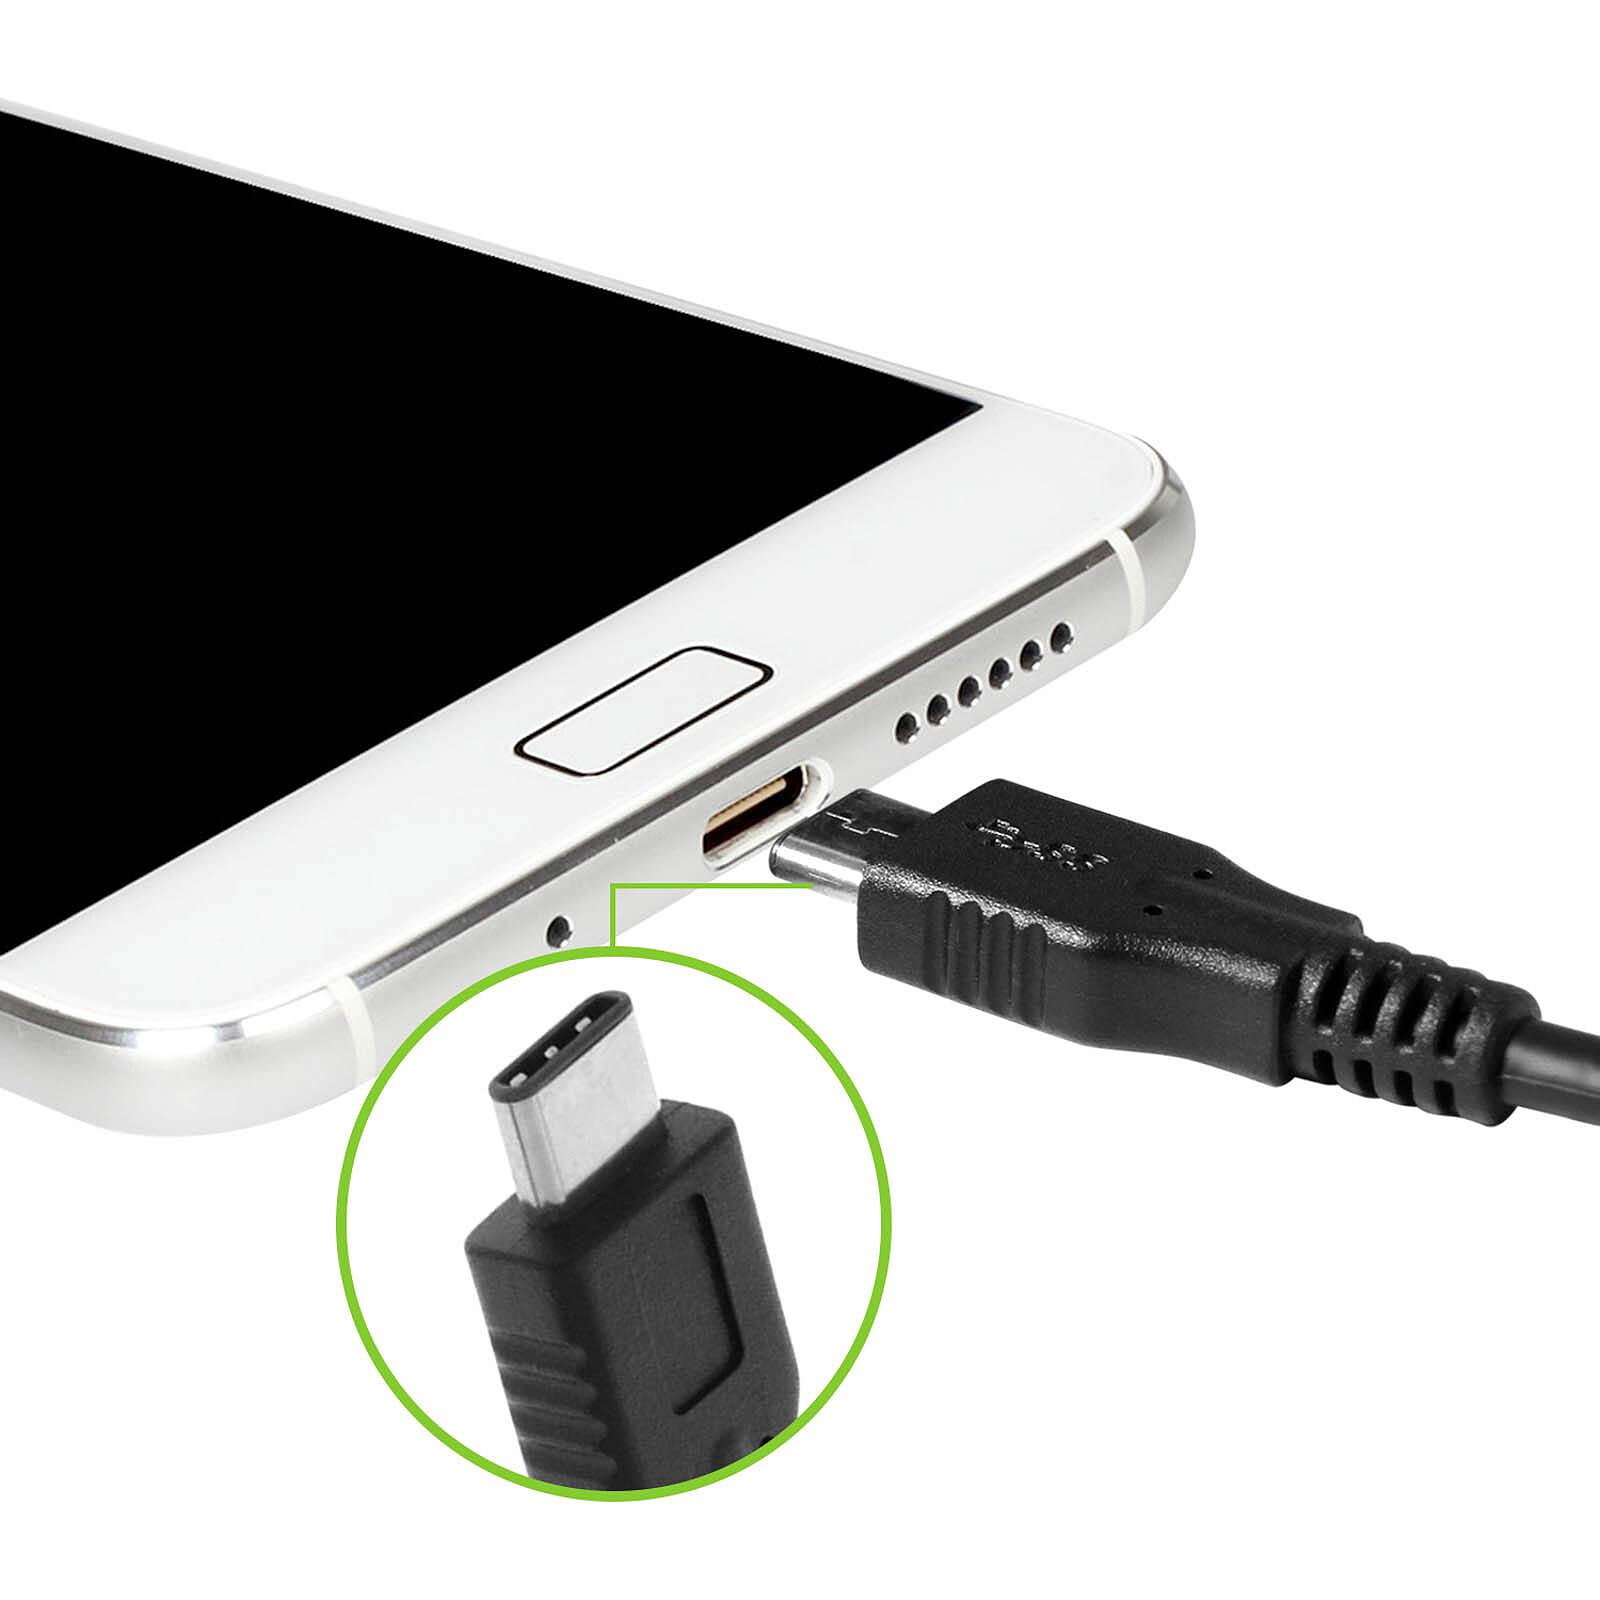 Vhbw Adaptateur OTG pour appareils mobiles - Câble de USB Type C (mâle) vers  Micro USB (femelle), blanc